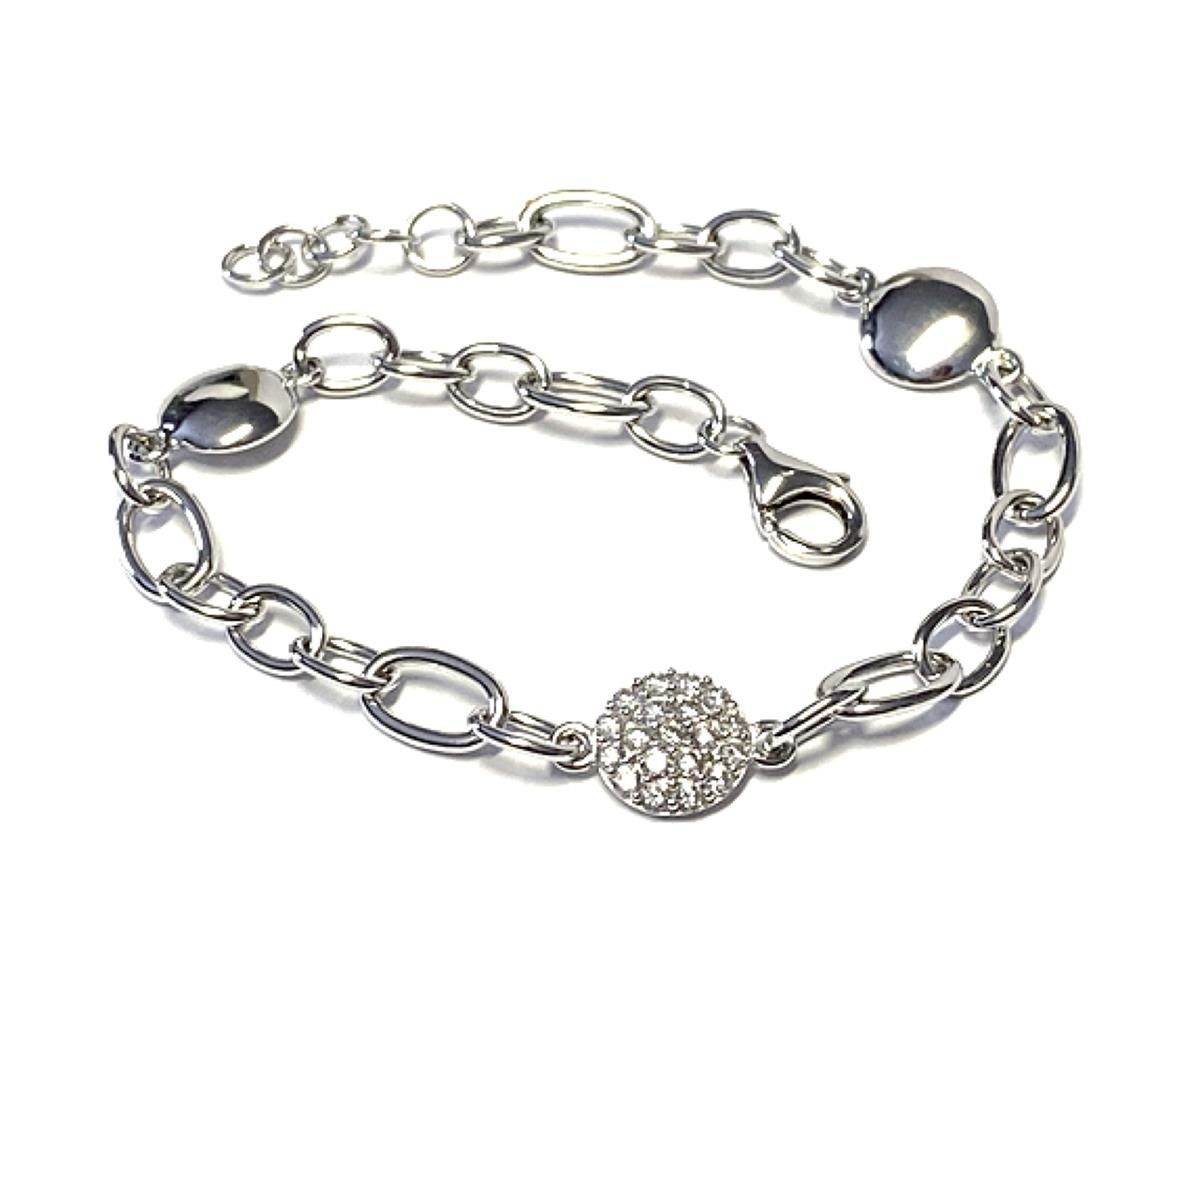 Edelschmiede925 Collier Armband Silber 925 rhodiniert Bettelarmband  Zirkonia 18 - 20cm